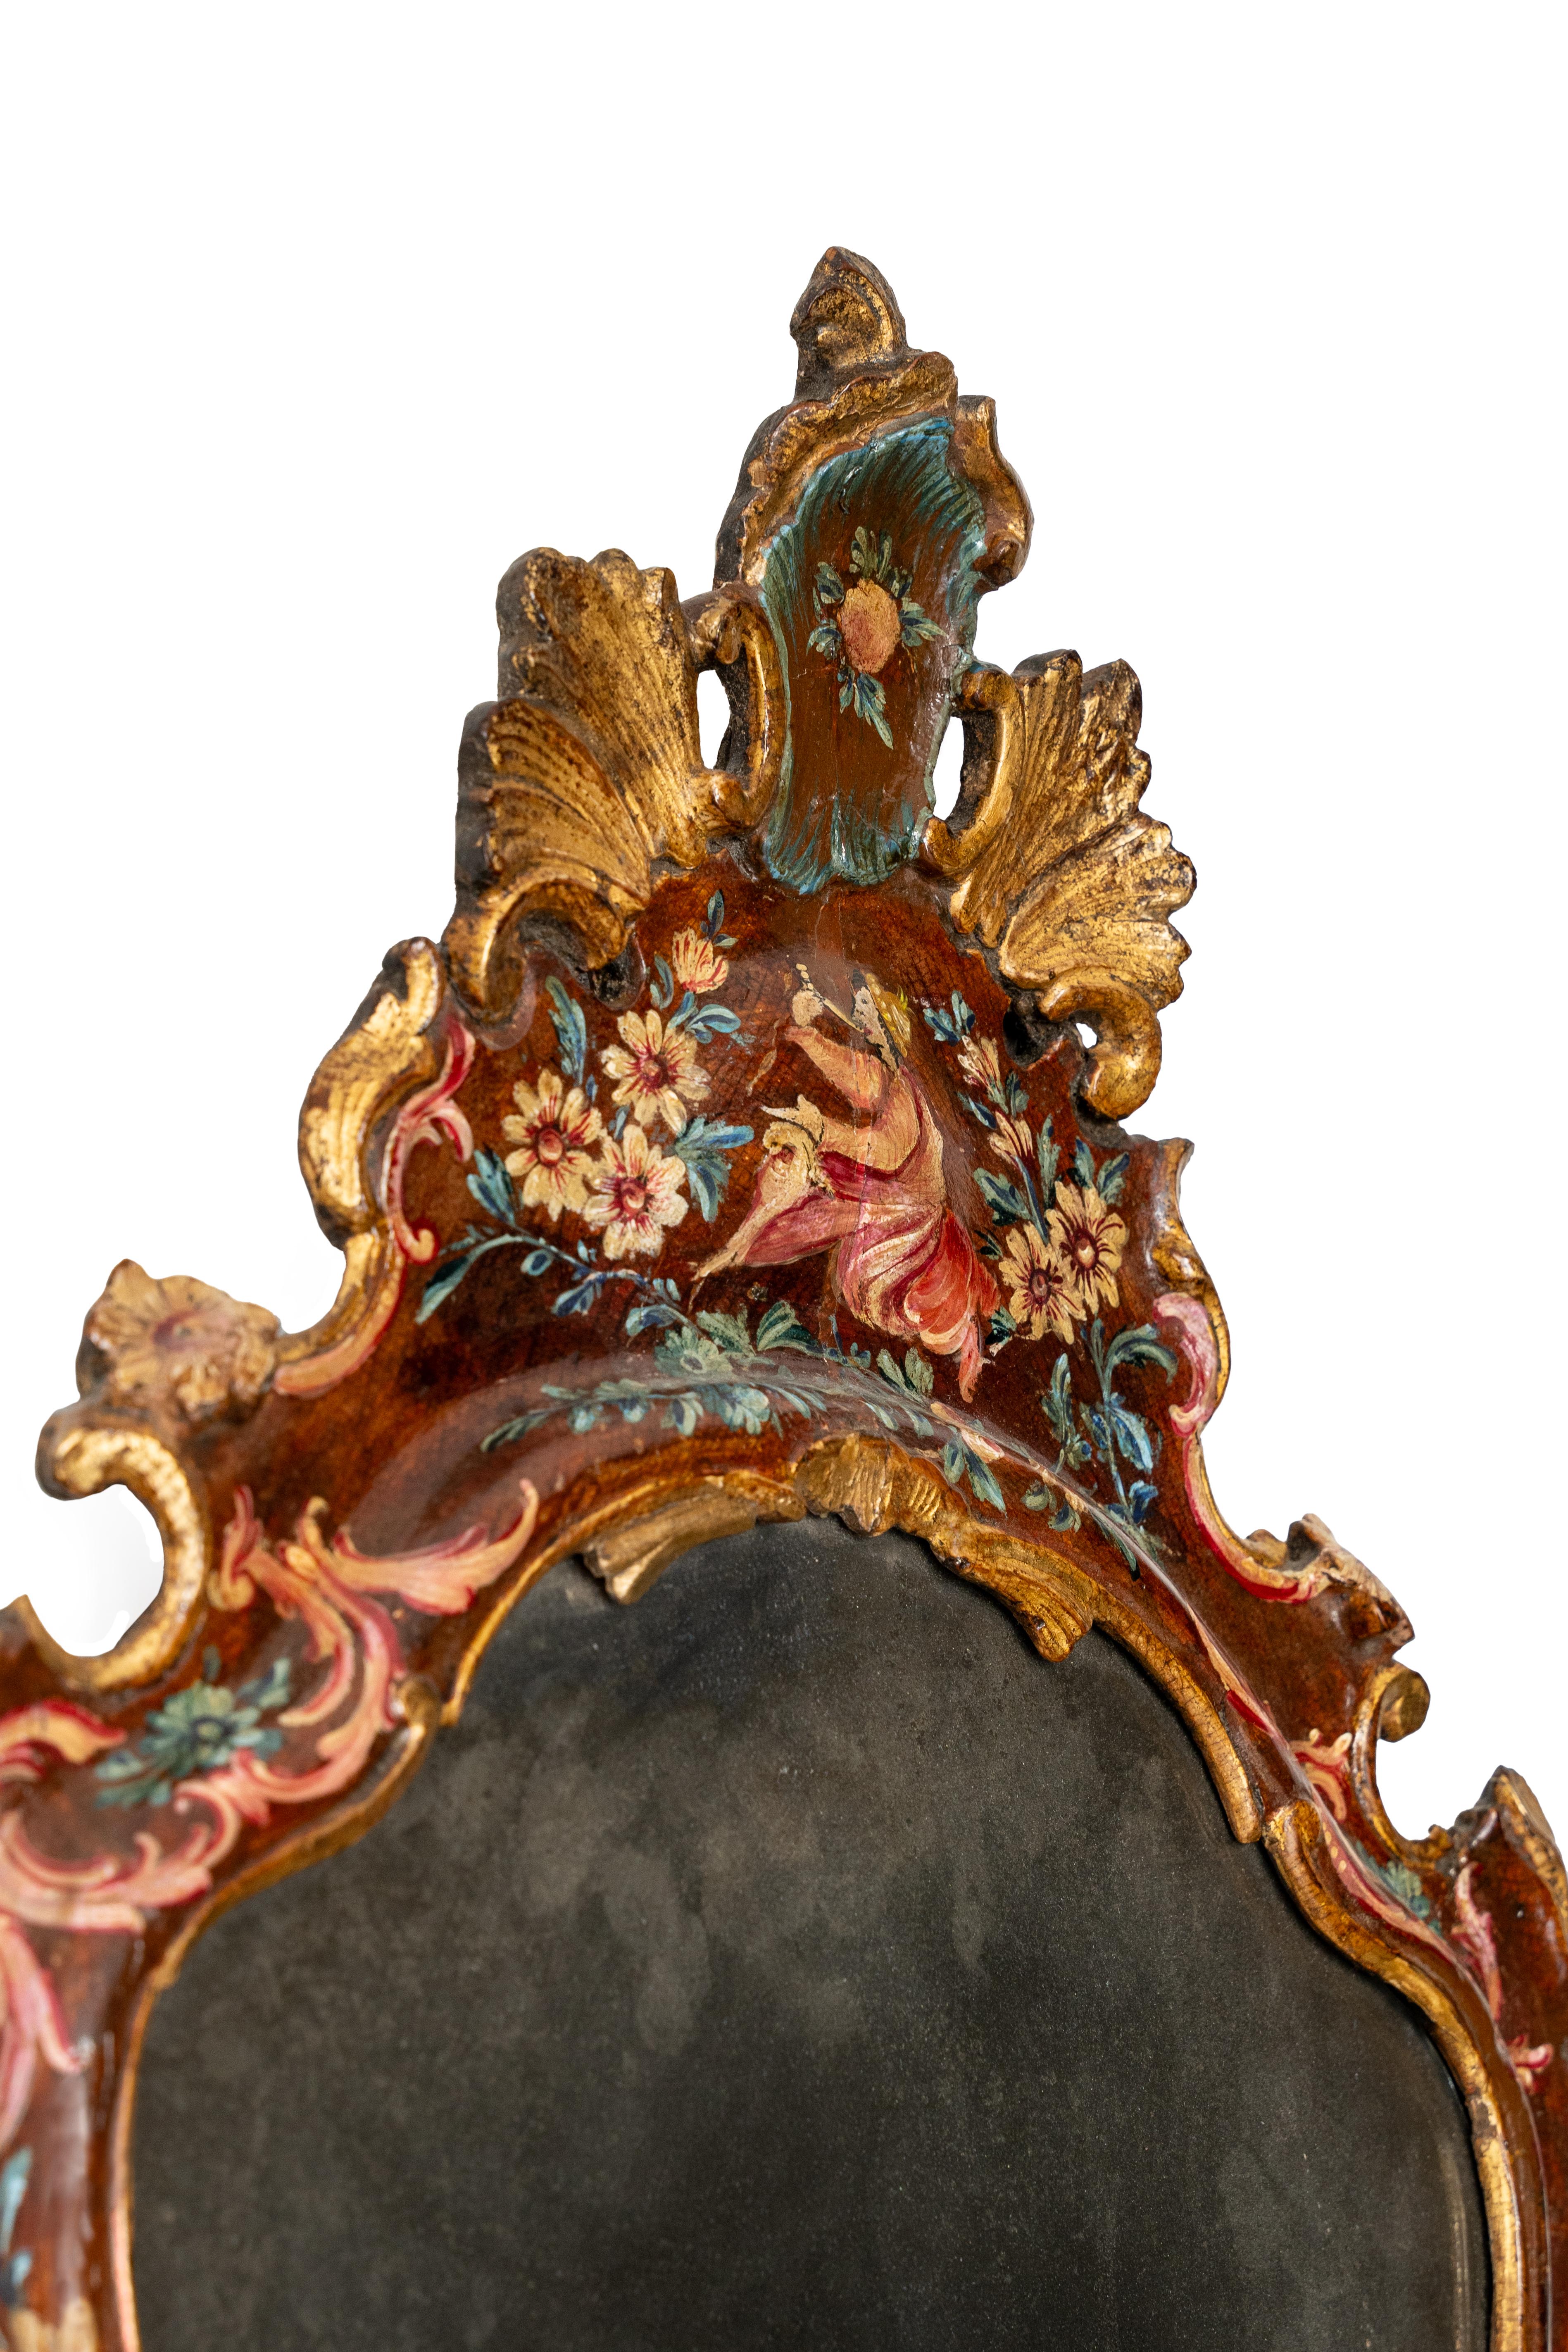 Rare miroir vénitien en bois laqué et doré. Le cadre est façonné dans toutes ses parties. Miroir original et contemporain du 18ème siècle.

Entièrement intact et original du 18ème siècle, 1750.

Le 